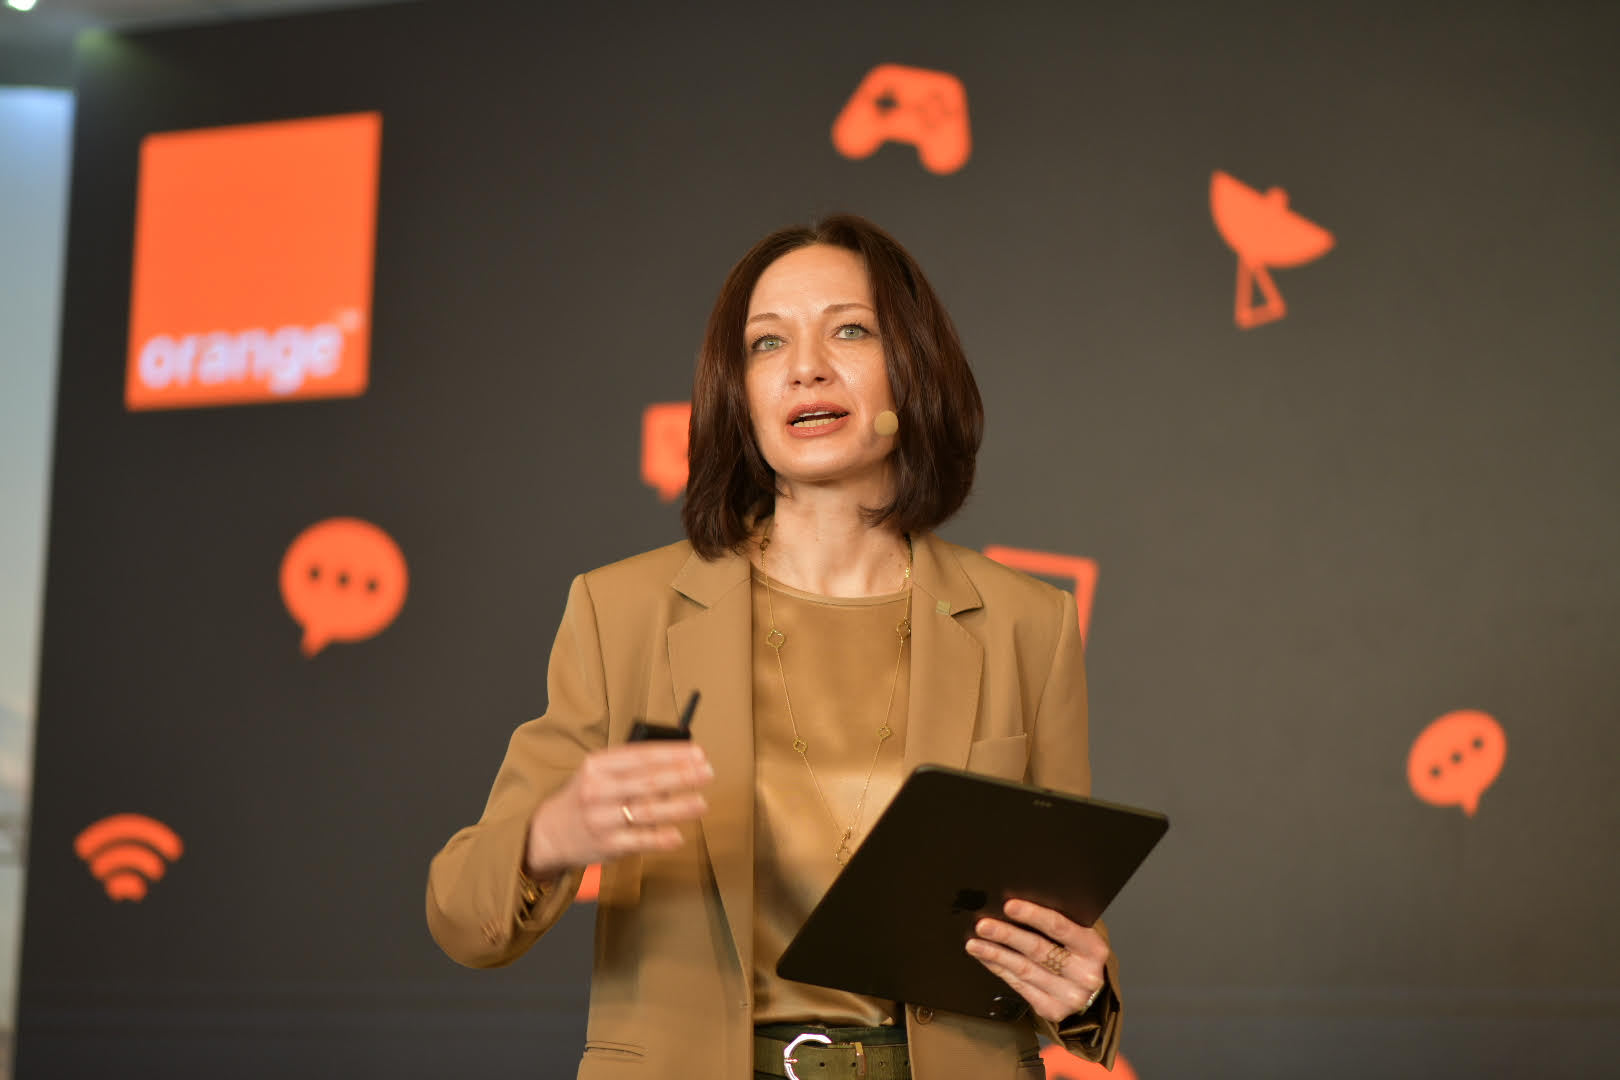 Liudmila Climoc, CEO al Orange România, grup cu afaceri de 1,2 mld. euro: Am intrat într-o furtună perfectă - după doi ani de pandemie, se simt şi efectele crizei provocate de război